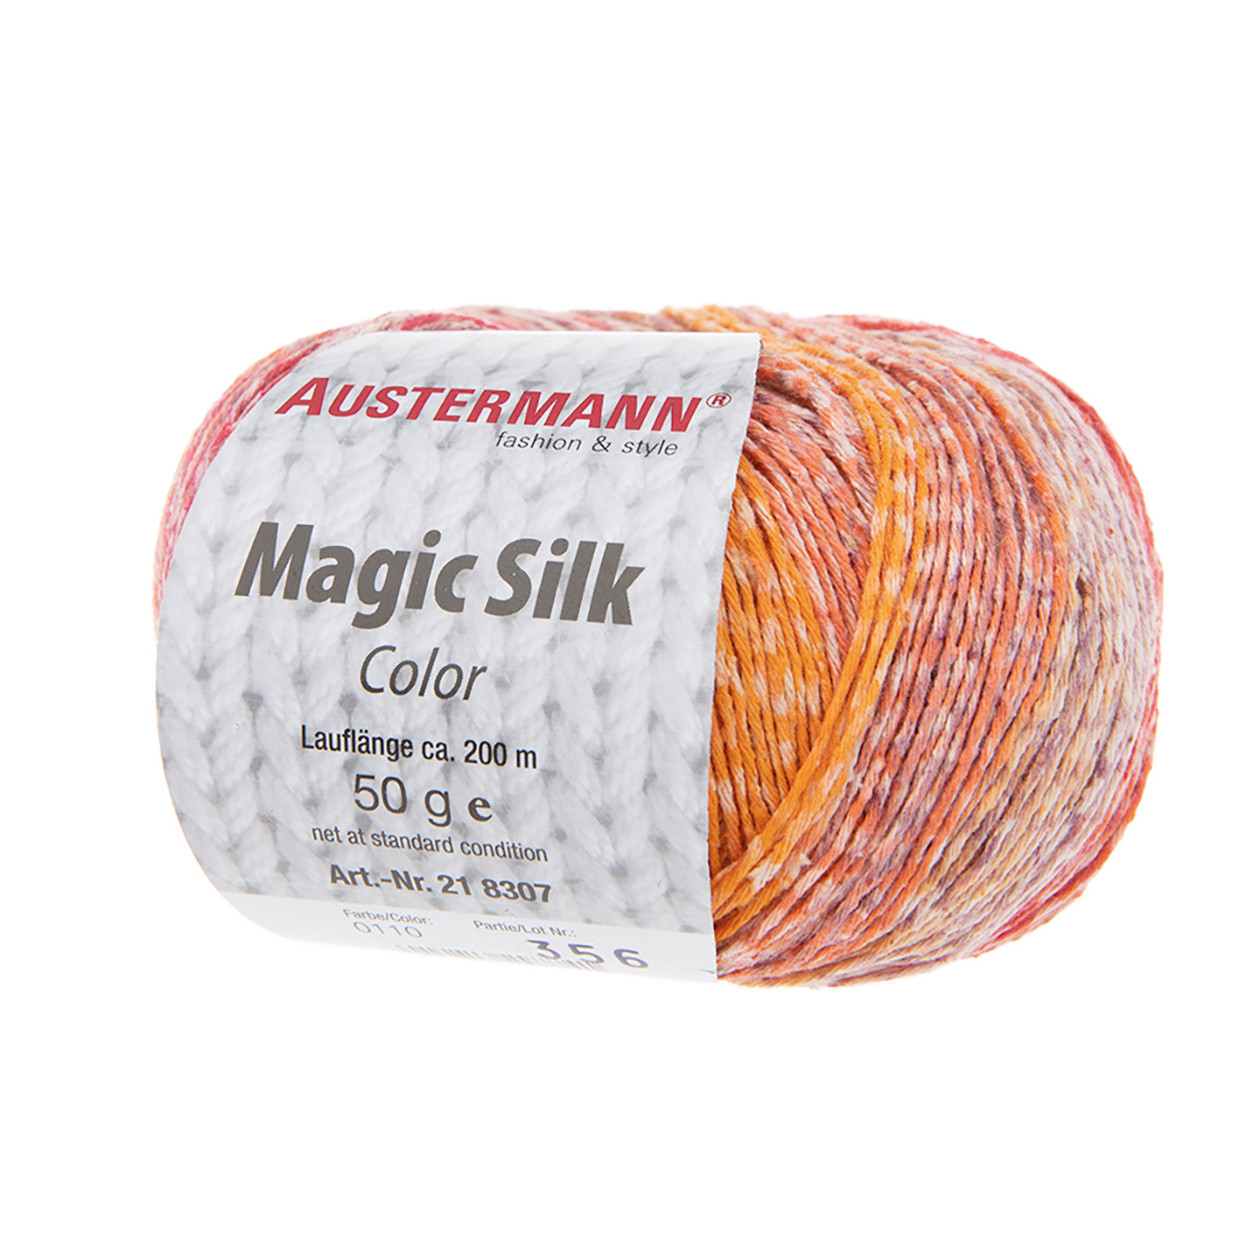 Magic Silk Color